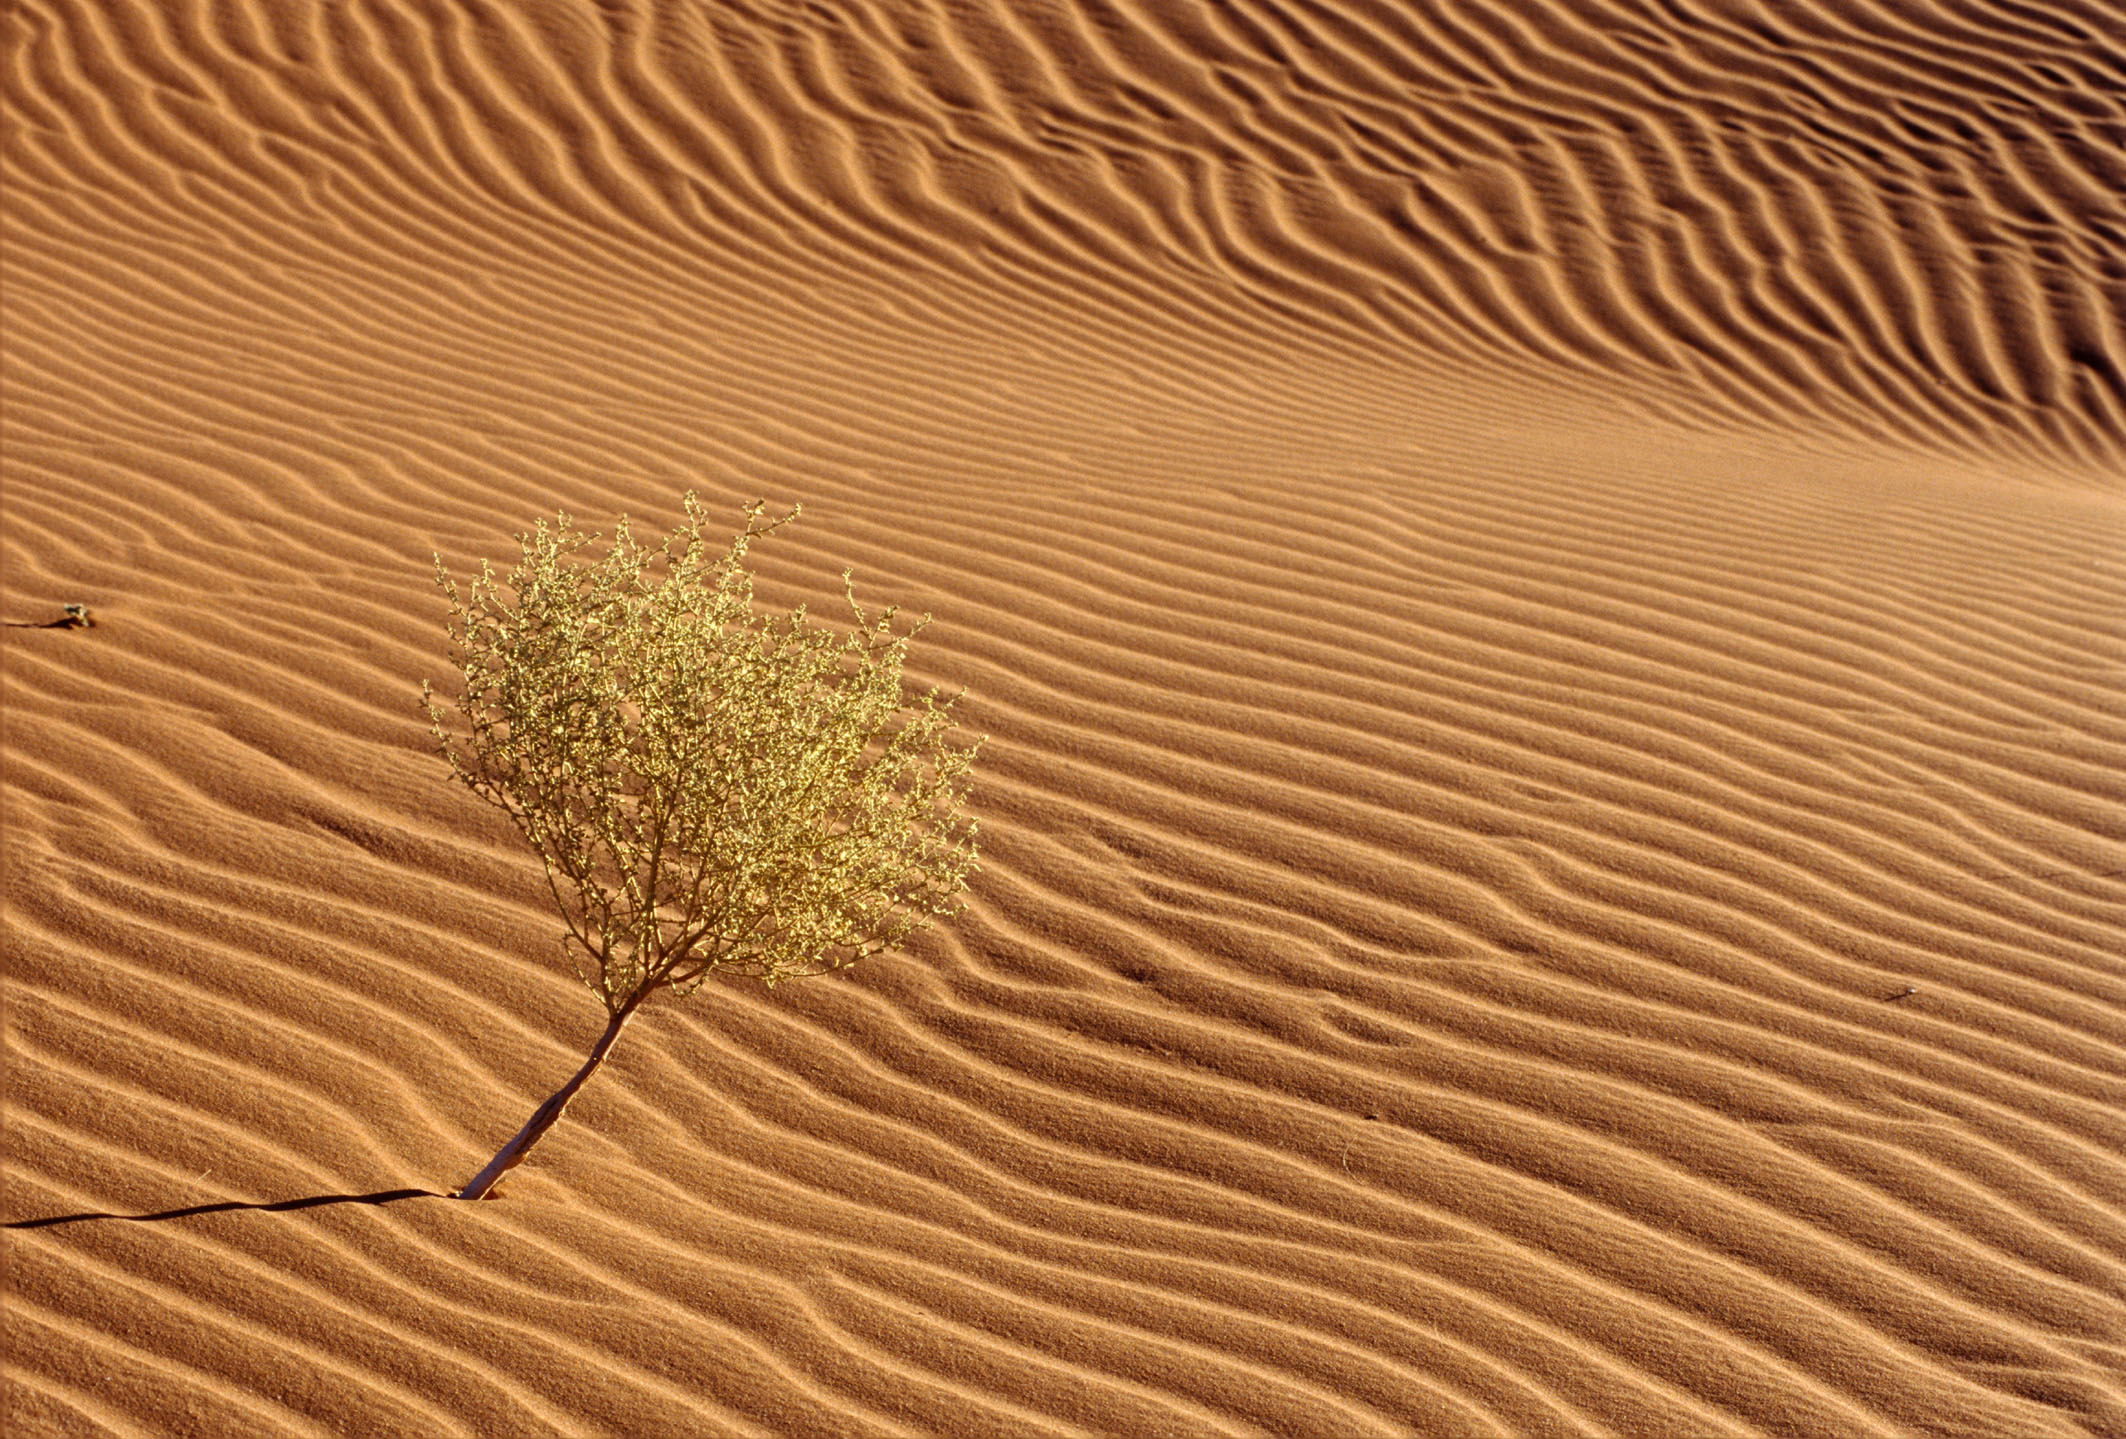 Afrika, Namibia, ehemalige deutsche Kolonie,
einsamer Strauch im Sand auf an einer D|ne in der W|ste Namib bei Sossusvlei, Touristenattraktion